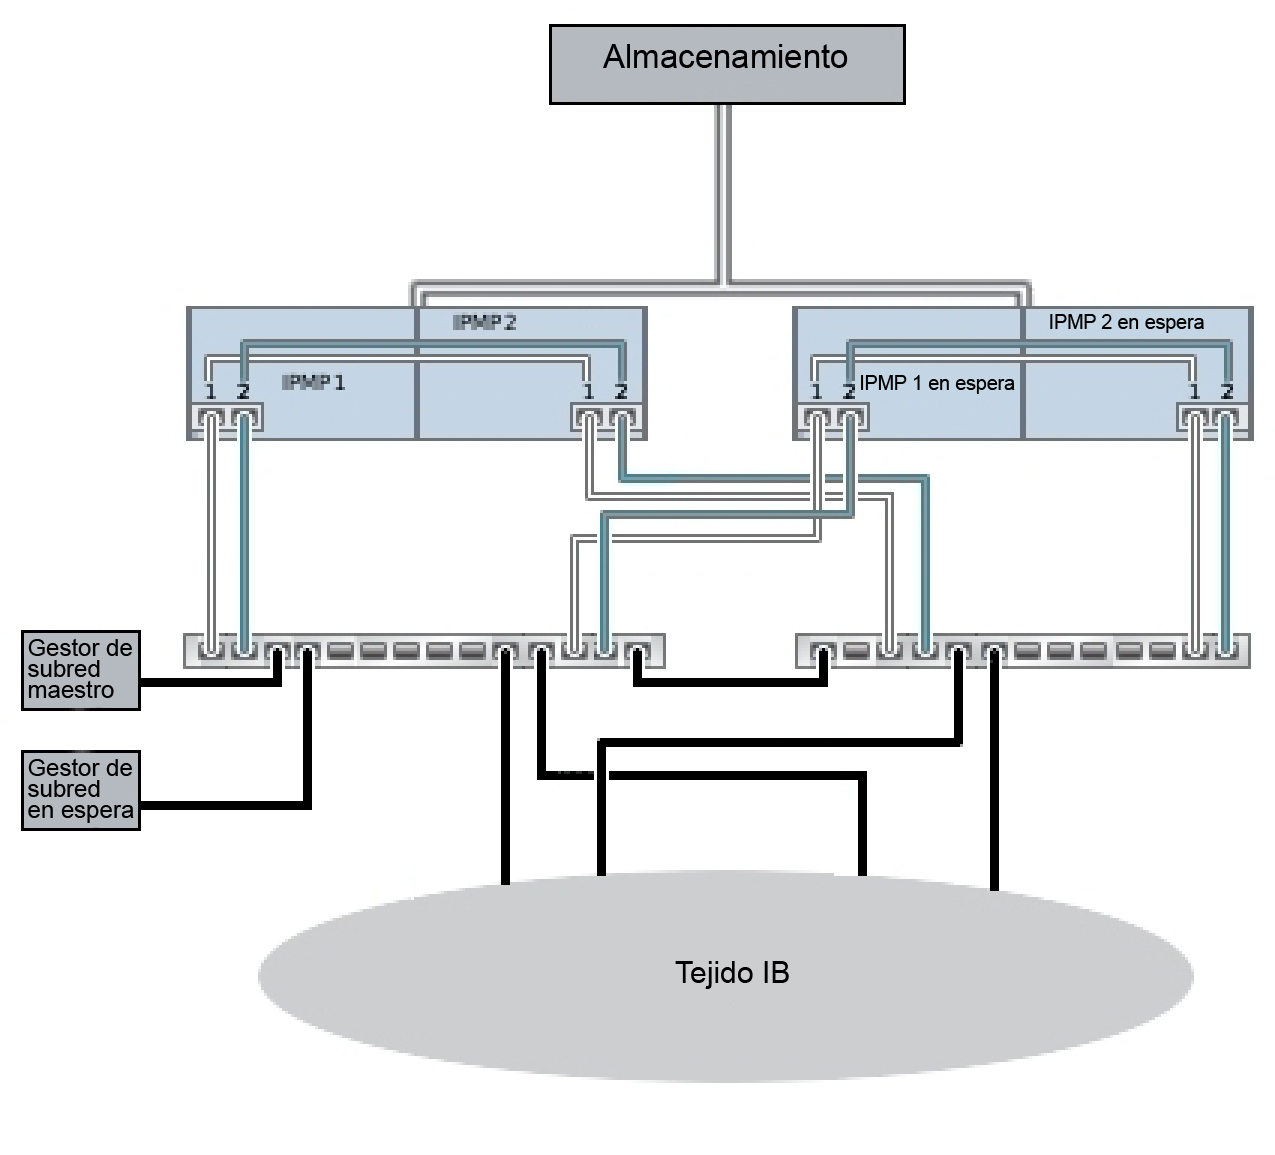 image:Configuración de clusters para redundancia de gestor de subred